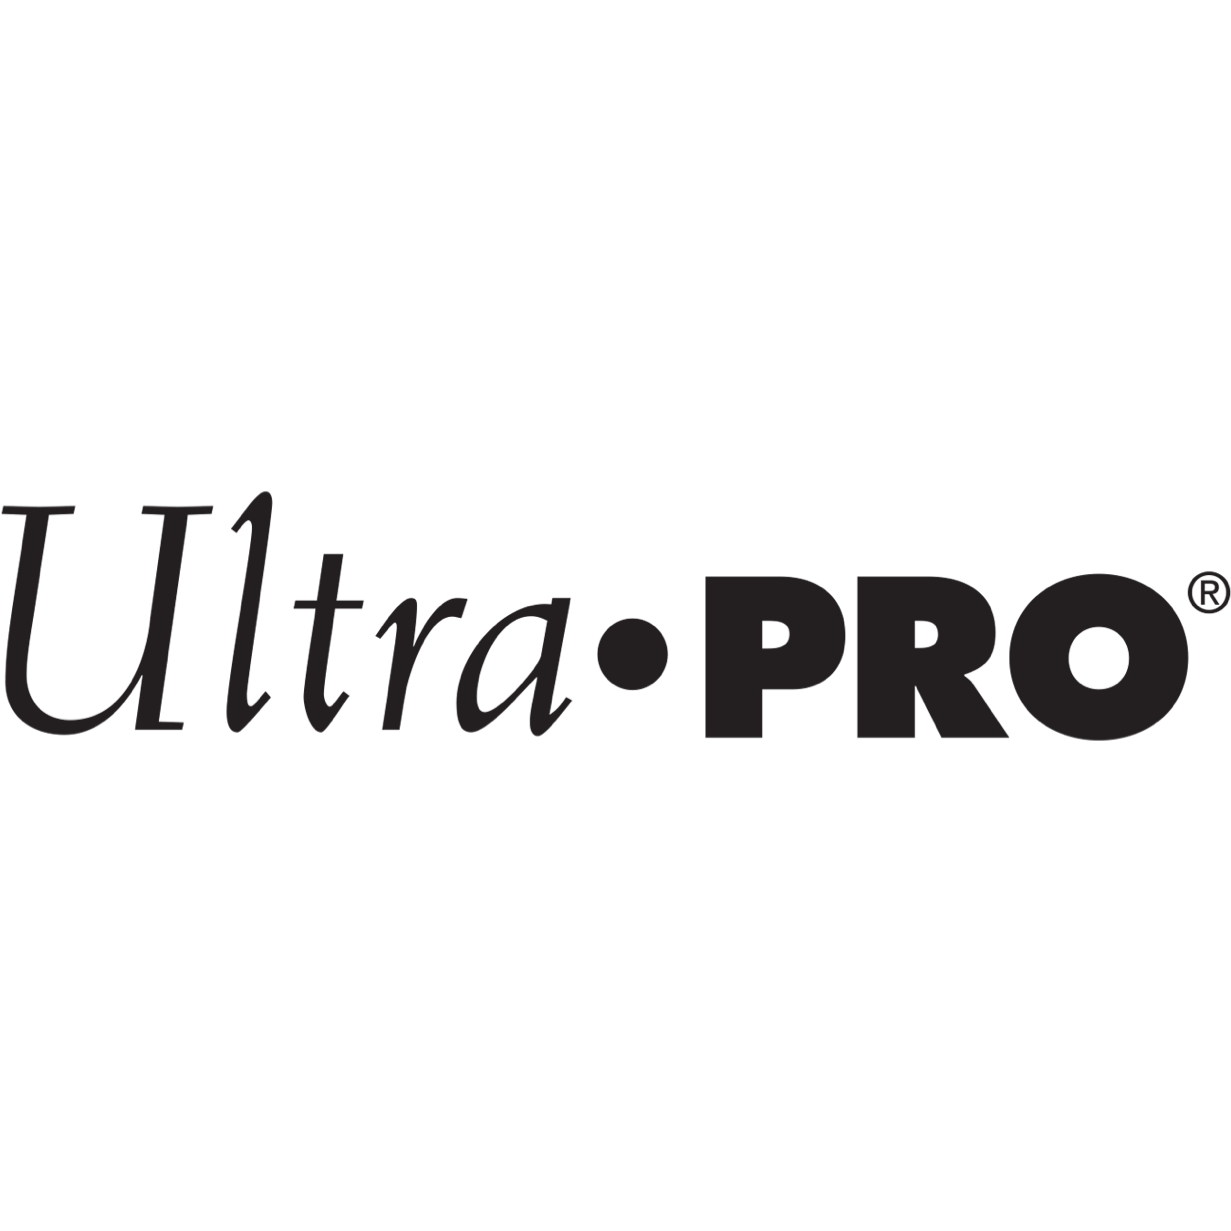 Ultra PRO Zubehör: Kartenhüllen, Deckboxen, Ordner & Alben kaufen bei ReCollectibles.